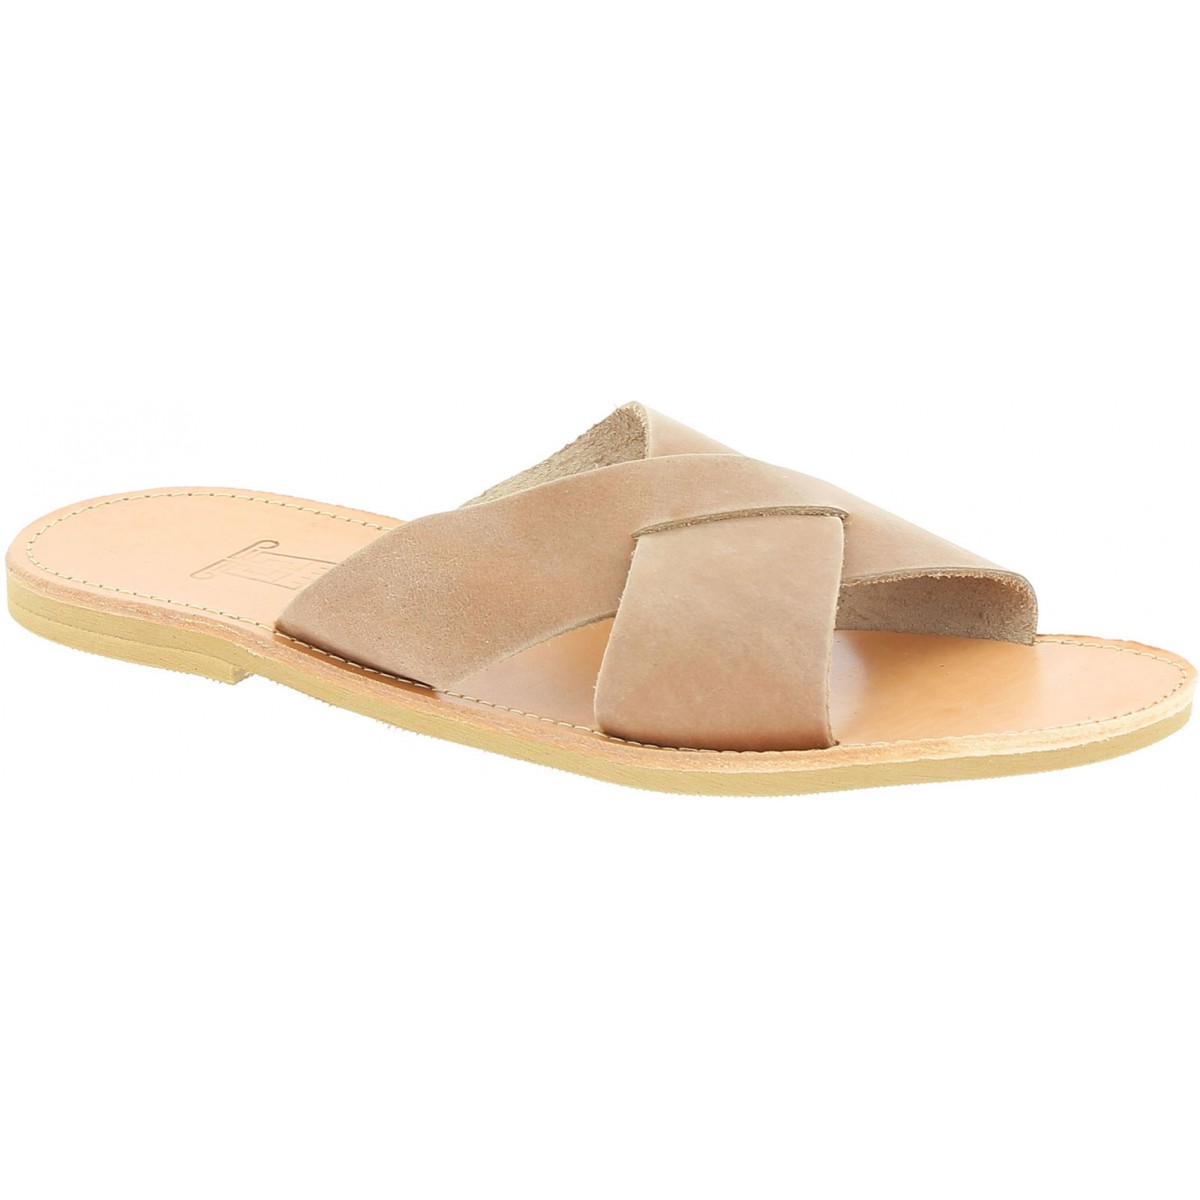 Men's Sandals & Squishy Flip Flops